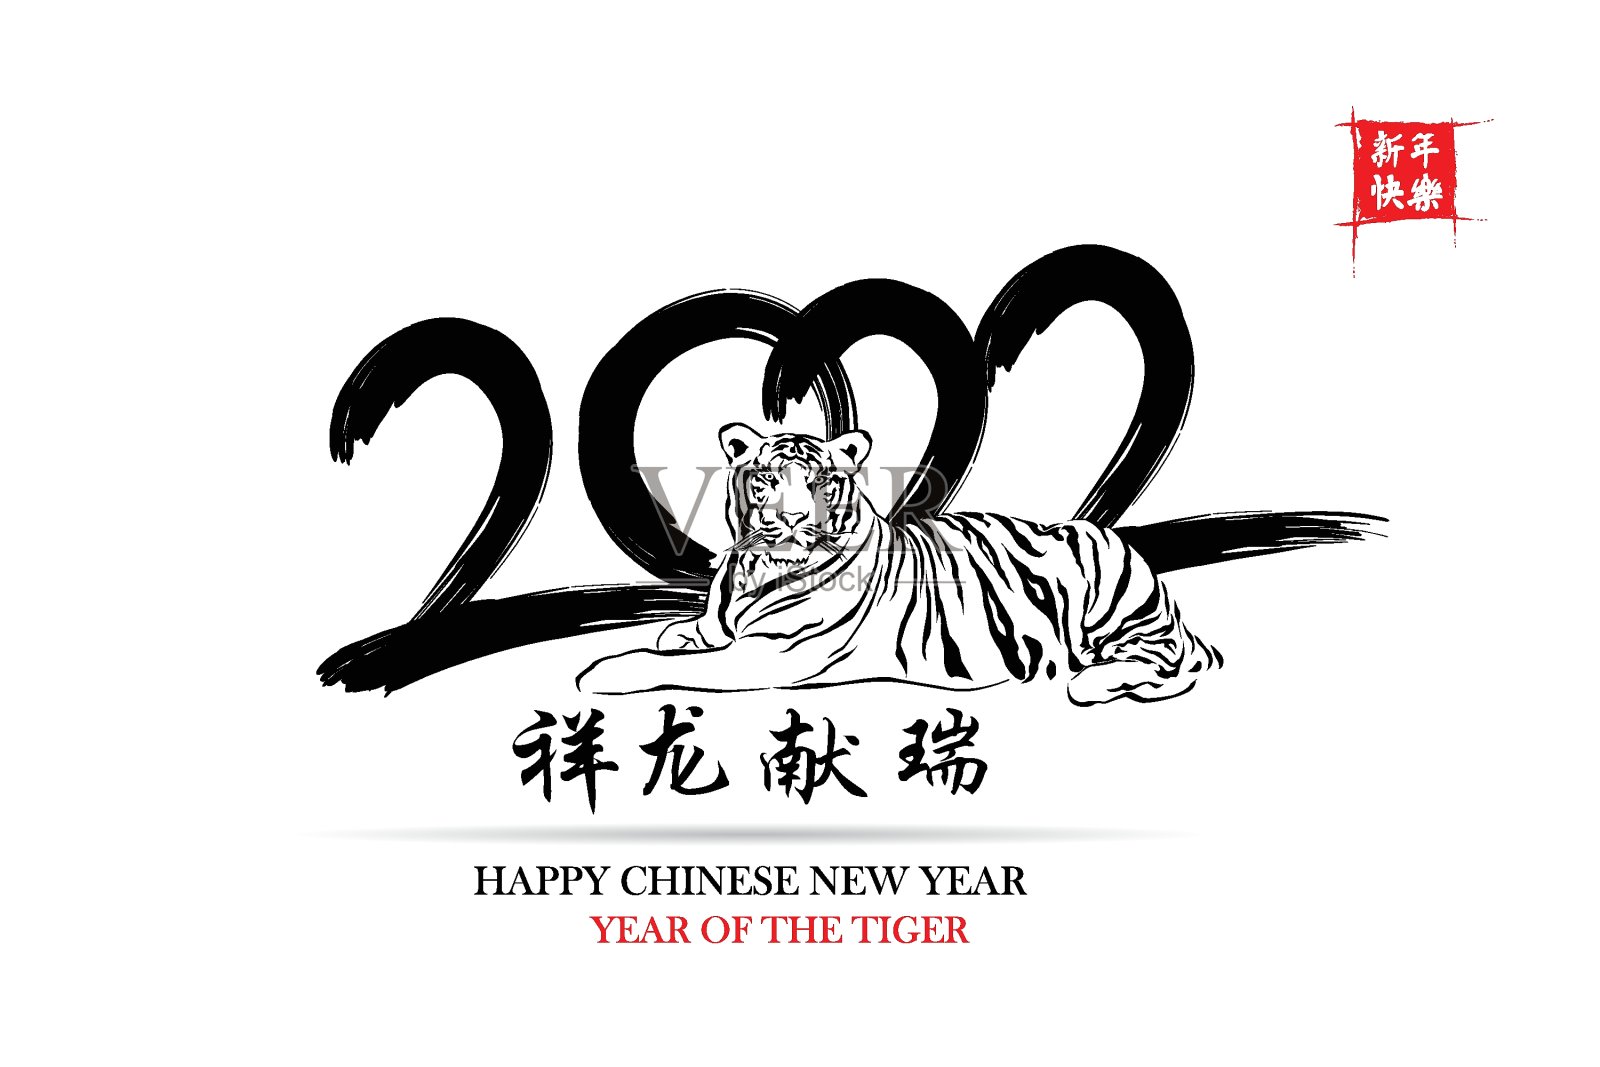 春节快乐。一切都很顺利，小中文文字翻译:中国日历为老虎的老虎2022设计元素图片